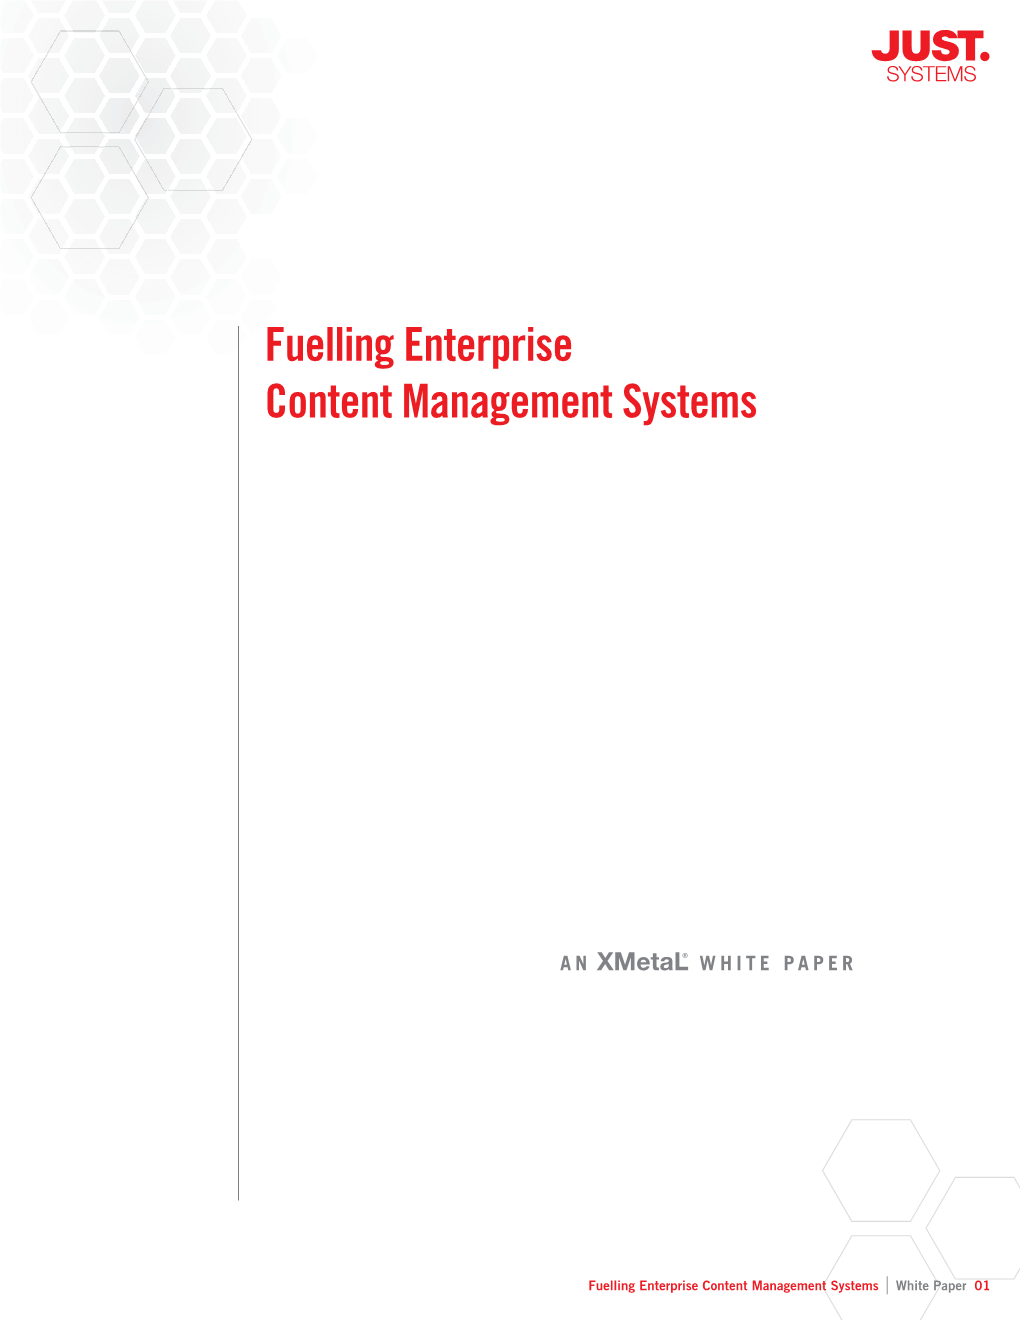 Fuelling Enterprise Content Management Systems